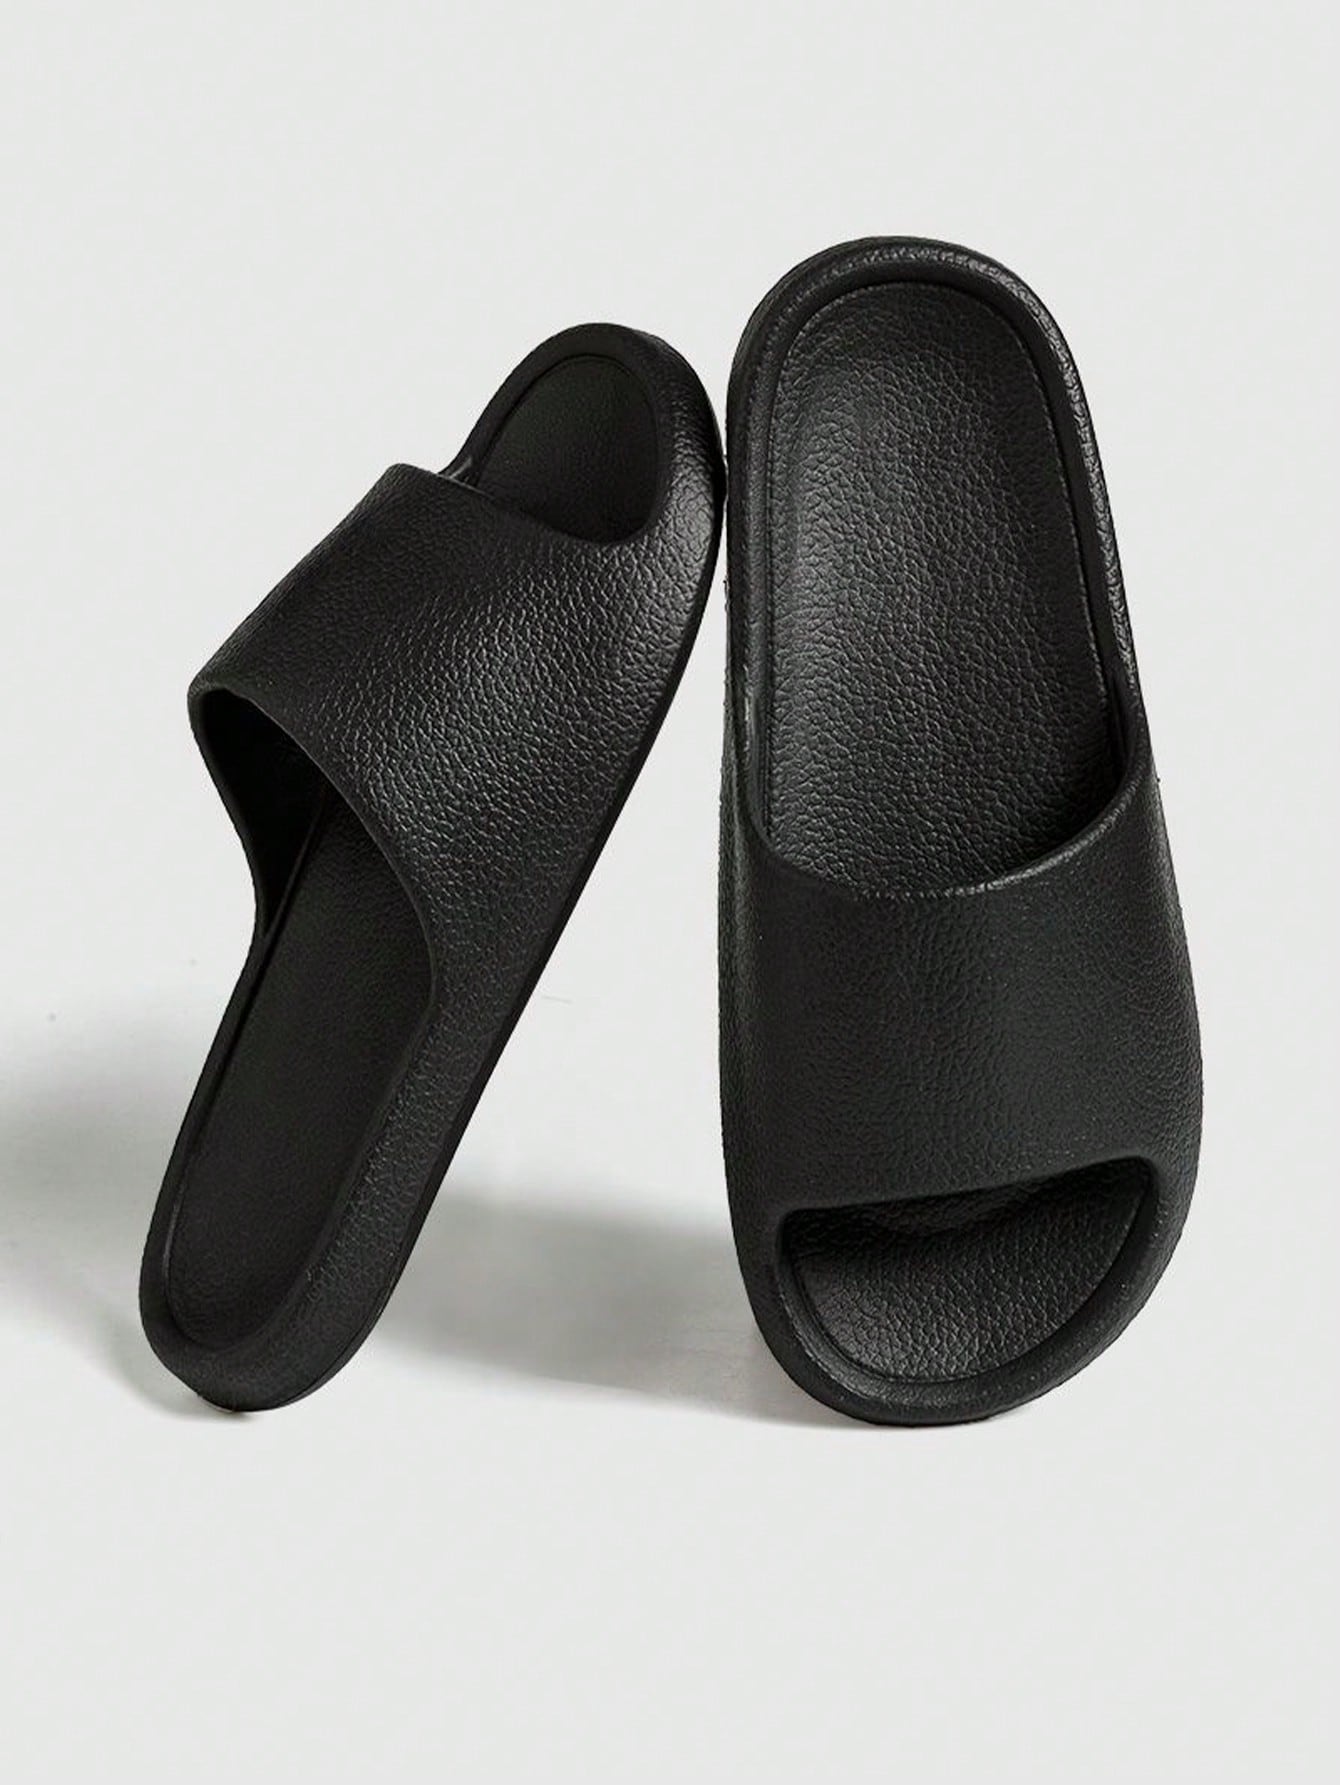 Парные домашние тапочки серии Melard/уличные сандалии для мужчин, черный